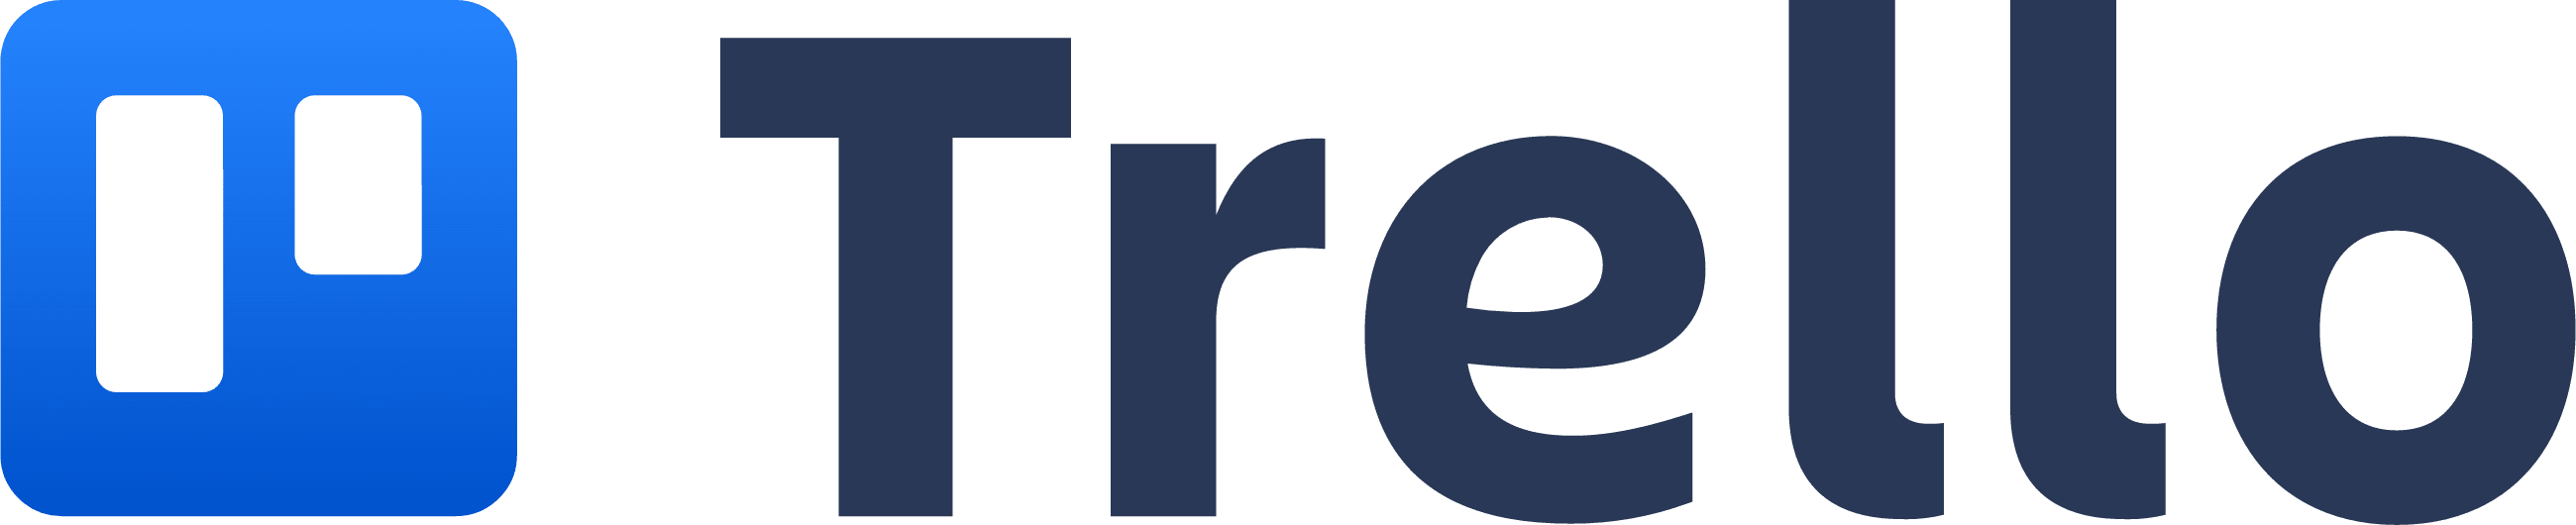 Trello-Logo, das an ein Trello-Board mit zwei Säulen erinnert.